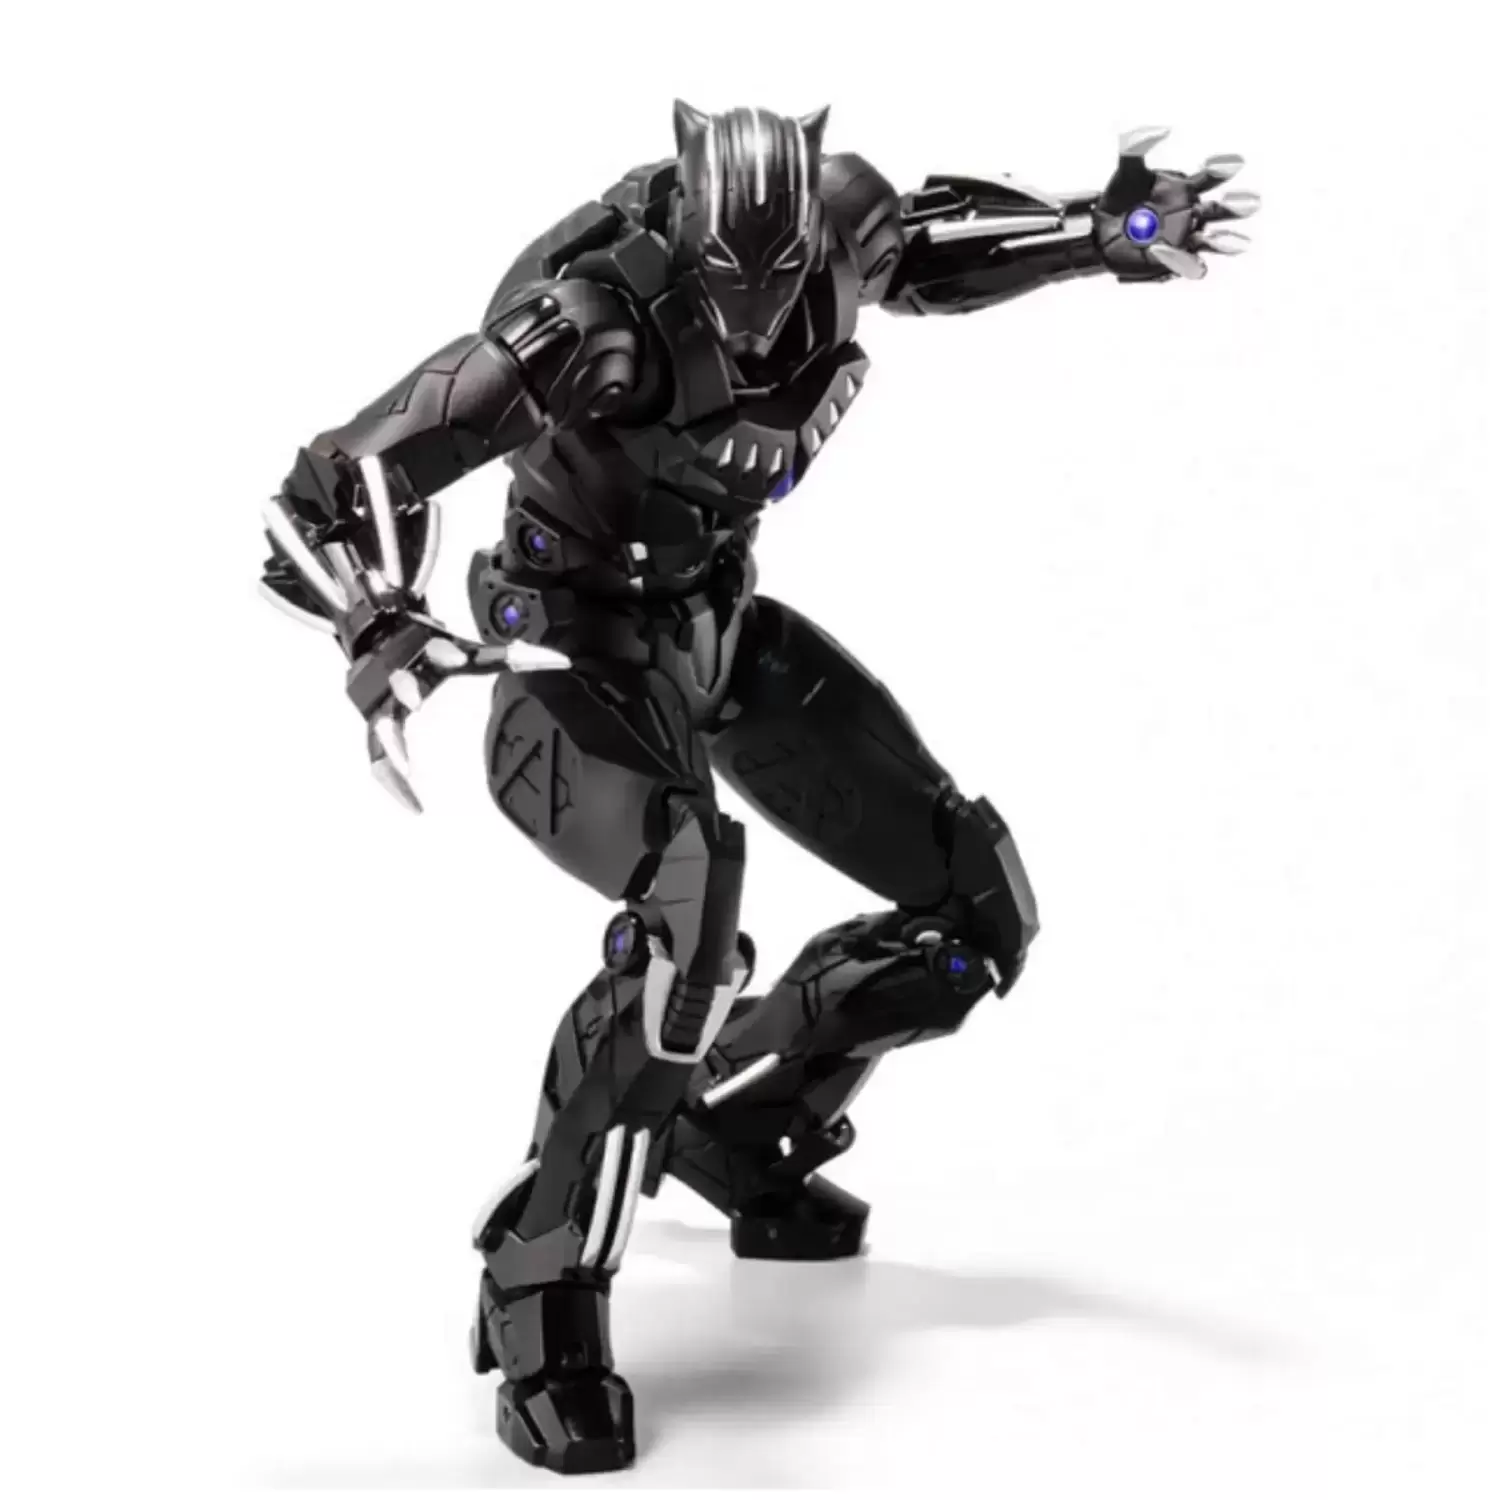 Bandai / Tamashii Nations - Fighting Armor Black Panther Sentinel